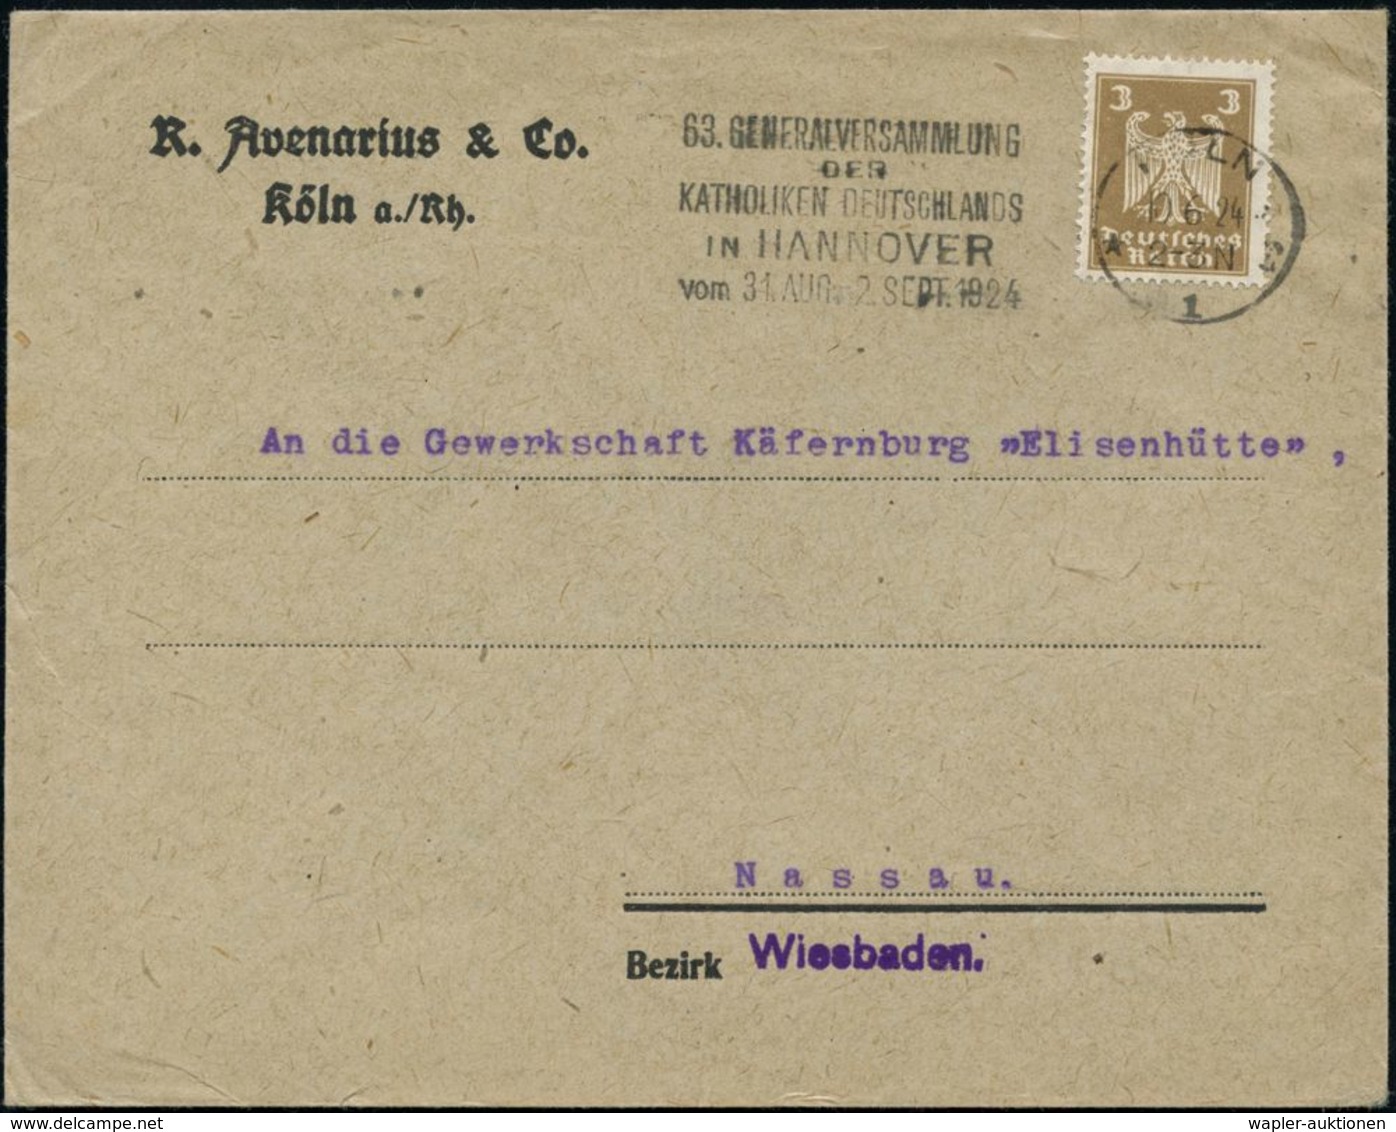 KIRCHENTAGE & KIRCHENKONGRESSE : KÖLN/ *1r/ 63.GENERALVERSAMMLUNG/ DER/ KATHOLIKEN DEUTSCHLANDS/ IN HANNOVER.. 1924 (18. - Christentum